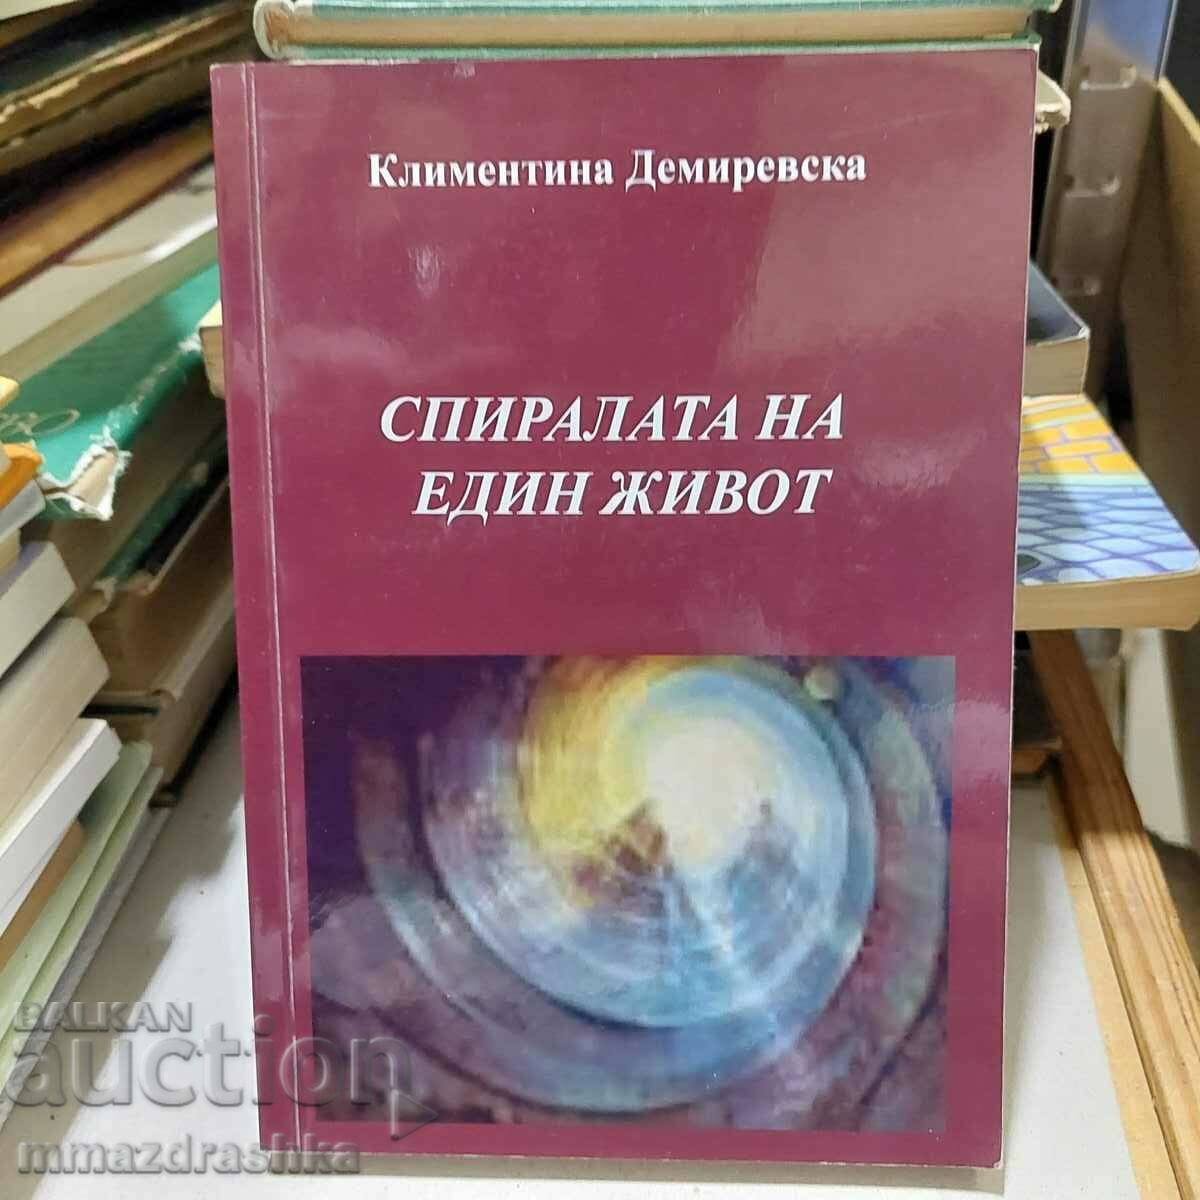 The spiral of a life, Klimentina Demirevska